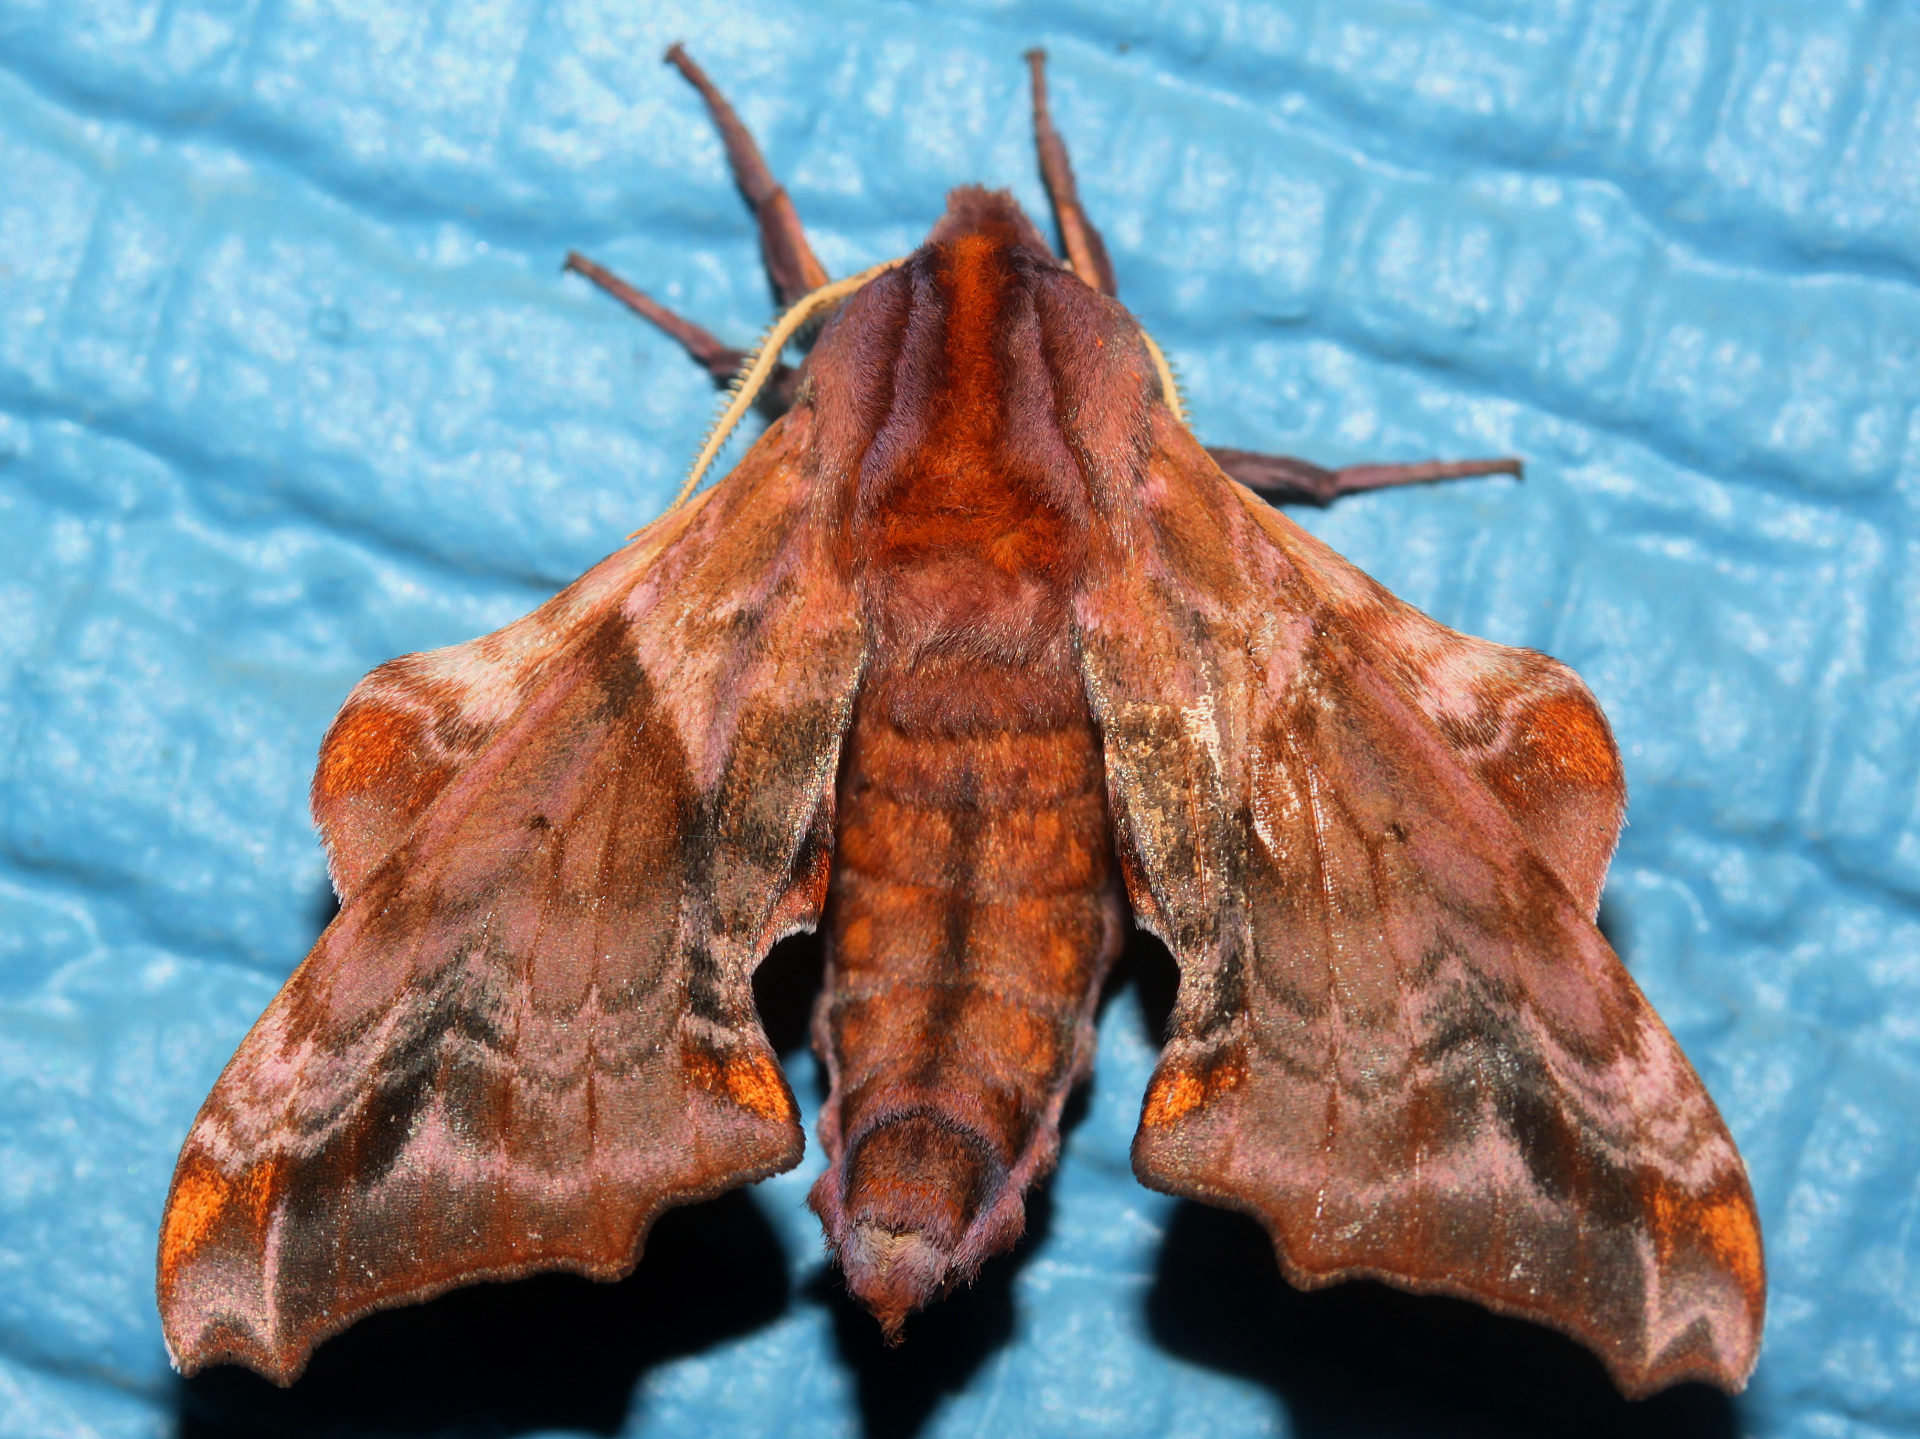 Paonias myops (Podróże » USA: Drogi nie obrane » Zwierzęta » Owady » Motyle i ćmy » Sphingidae)